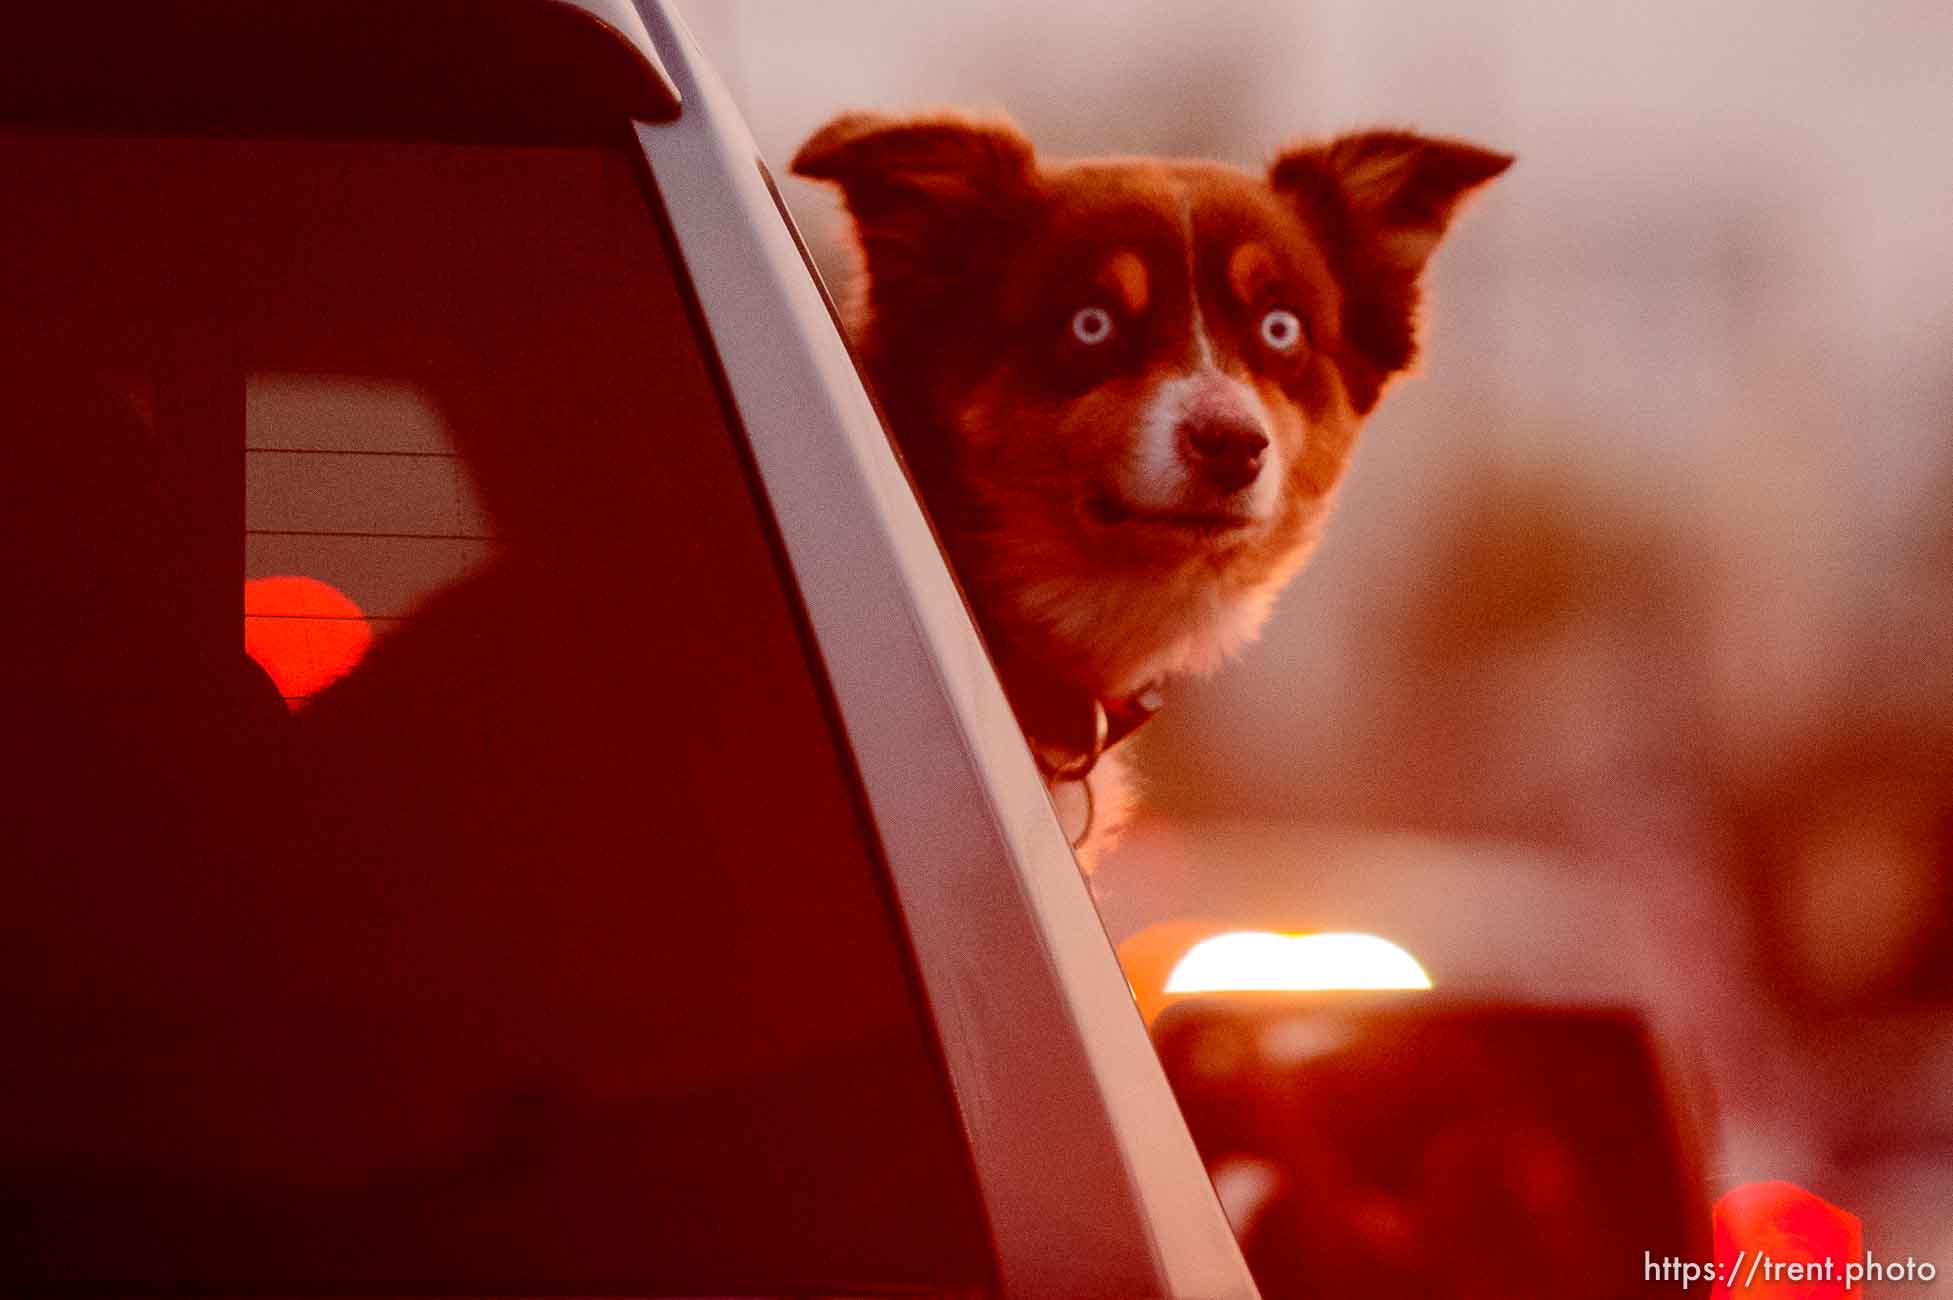 Dog in a MAGA Truck